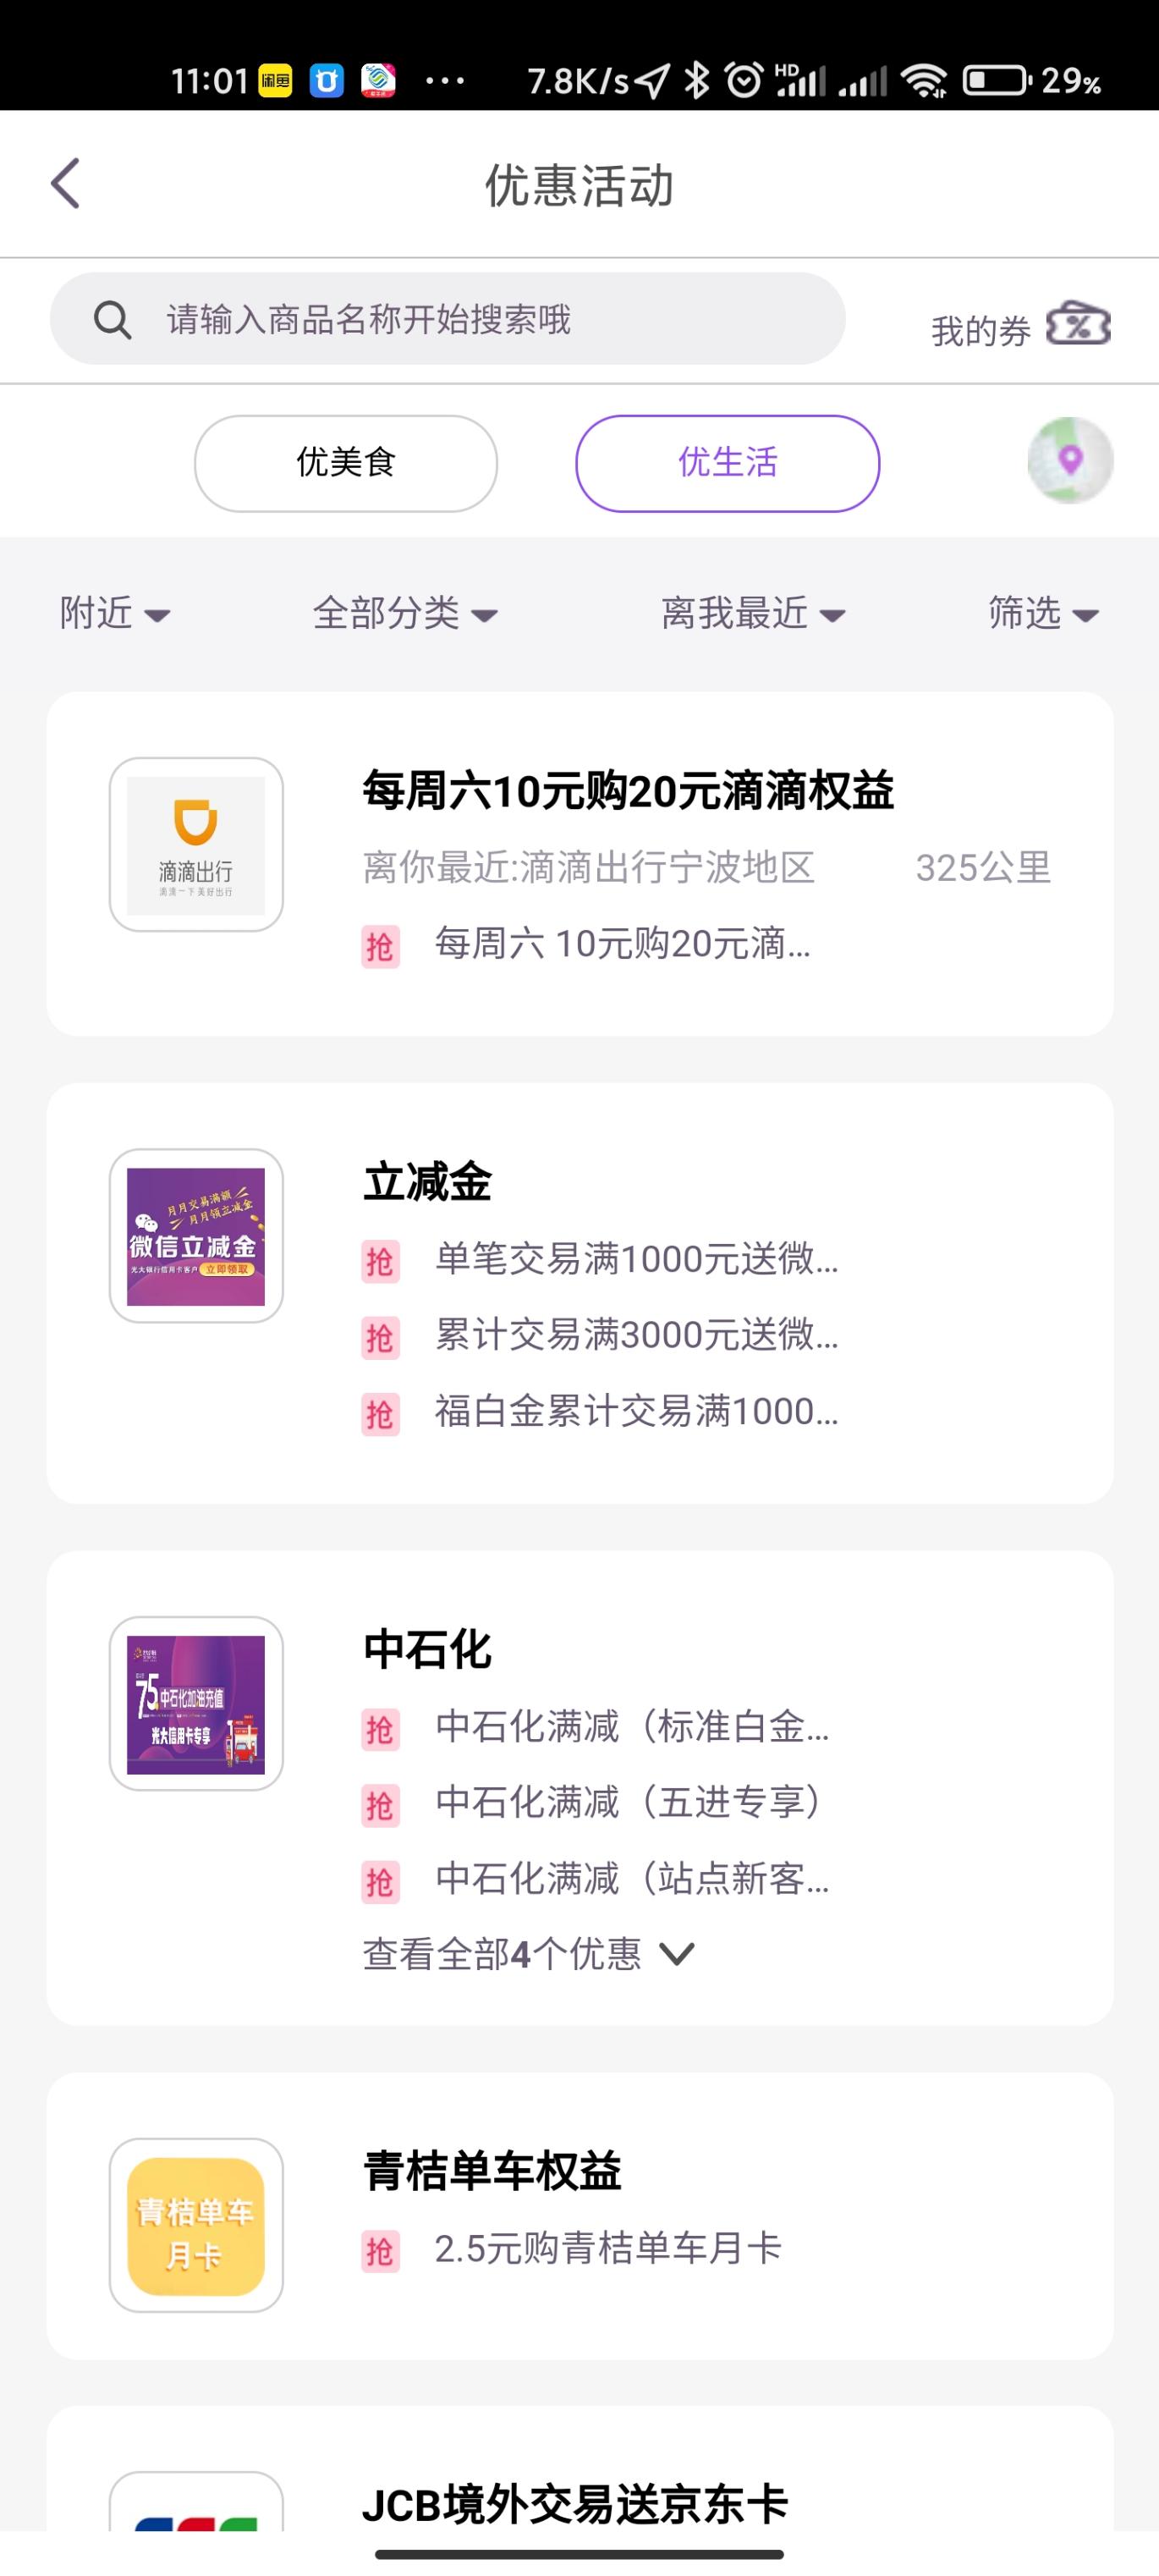 宁波光大银行 中石化加油卡还有货-惠小助(52huixz.com)